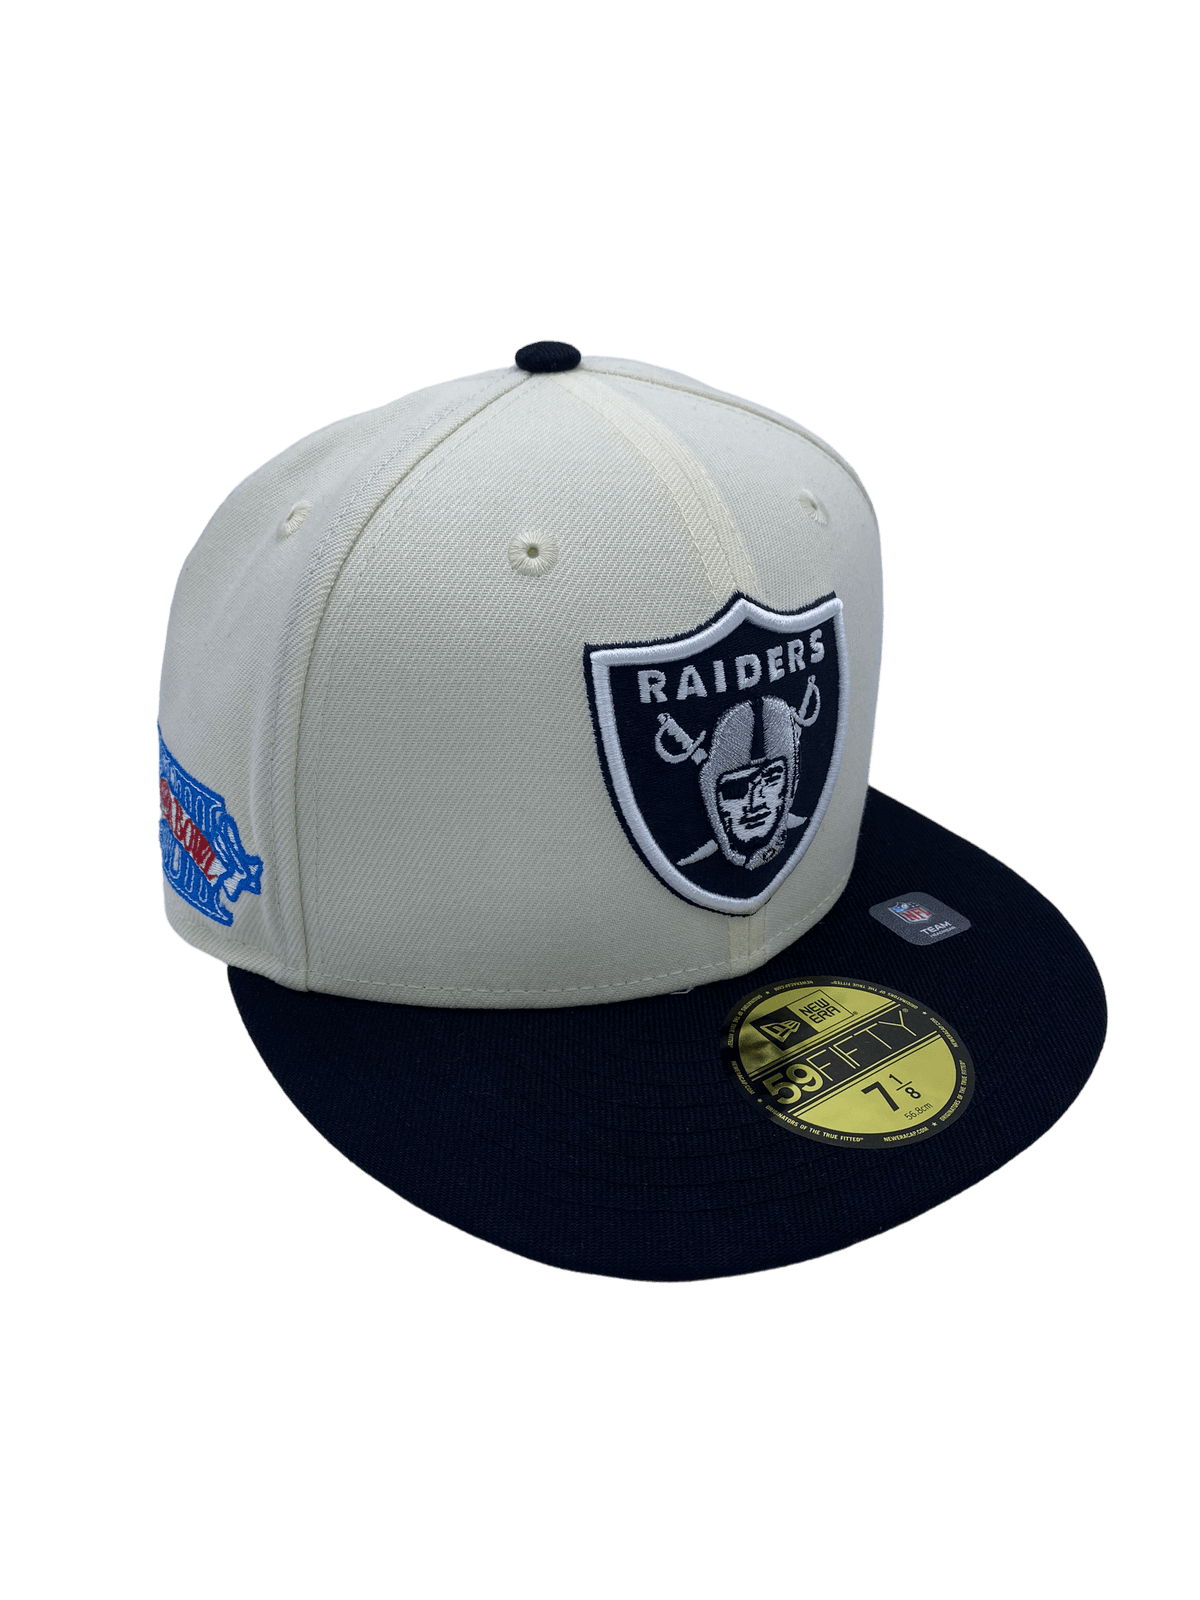 Las Vegas Raiders New Era 2023 Draft 59FIFTY Cap